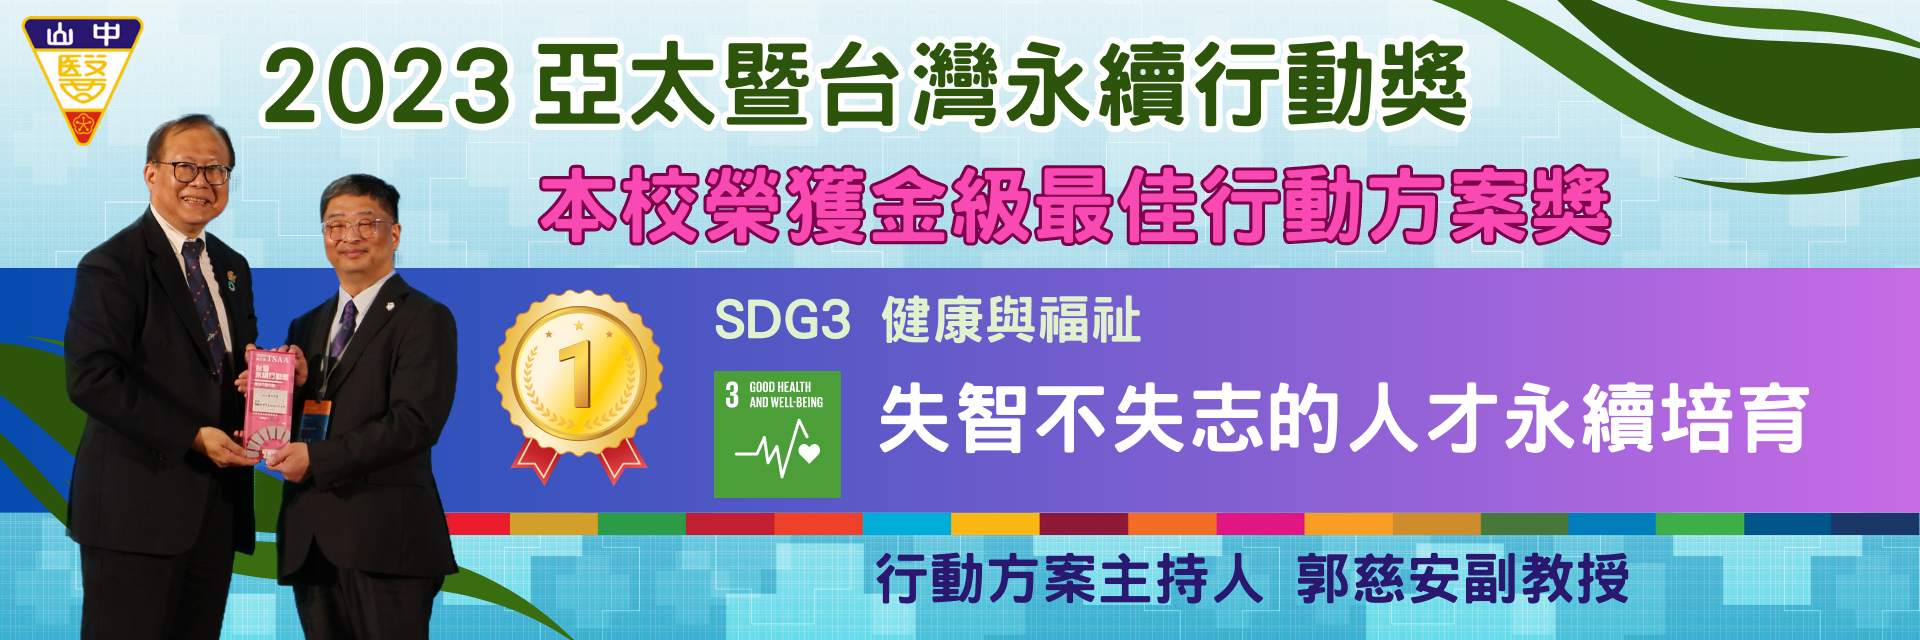 2023台灣永續獎金級